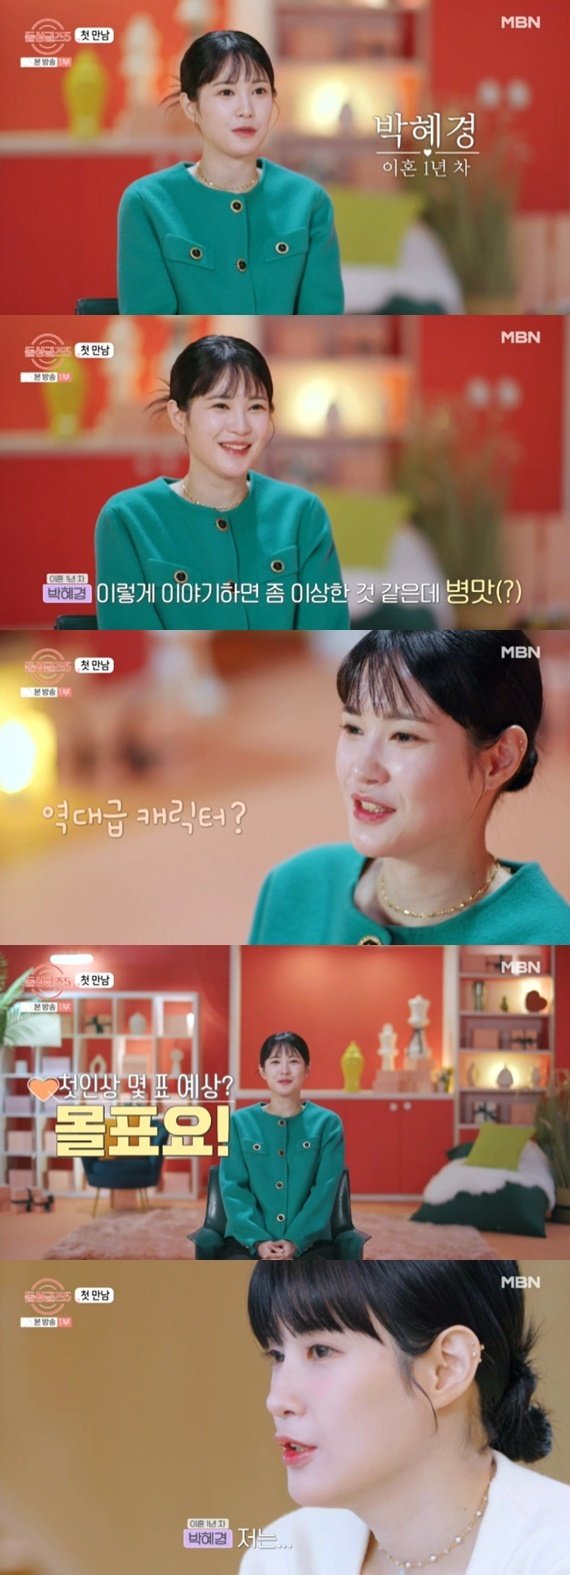 '돌싱글즈5' 박혜경, 첫인상 몰표 자신감…나 같은 캐릭터 없었다